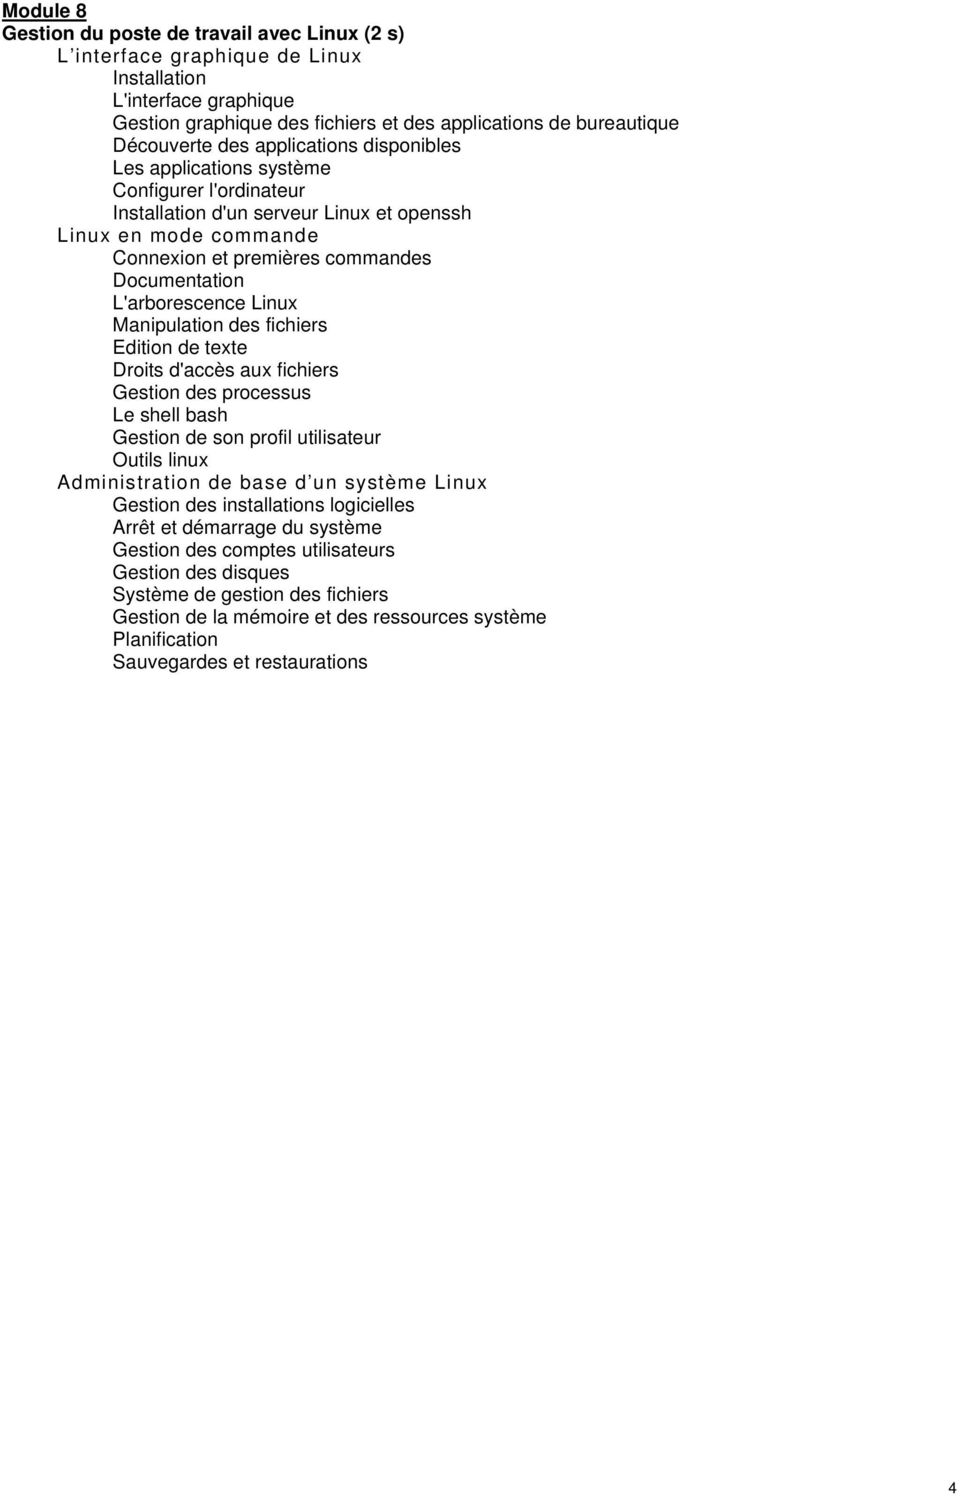 L'arborescence Linux Manipulation des fichiers Edition de texte Droits d'accès aux fichiers Gestion des processus Le shell bash Gestion de son profil utilisateur Outils linux Administration de base d